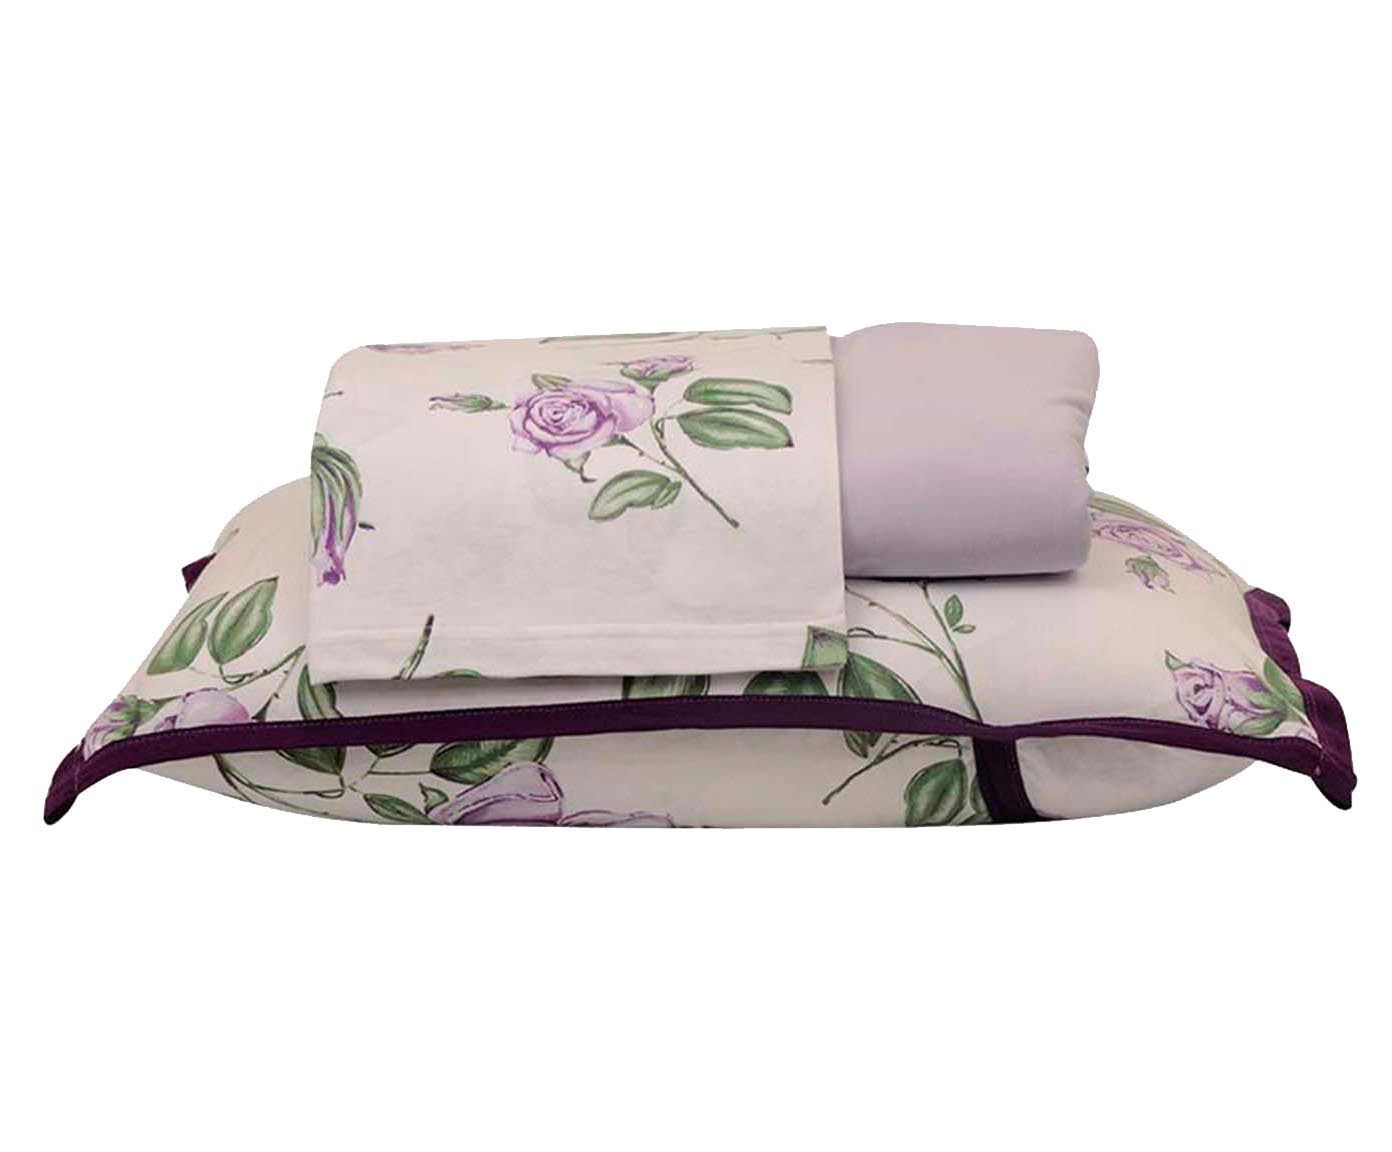 Jogo de lençol garden - para cama king size | Westwing.com.br